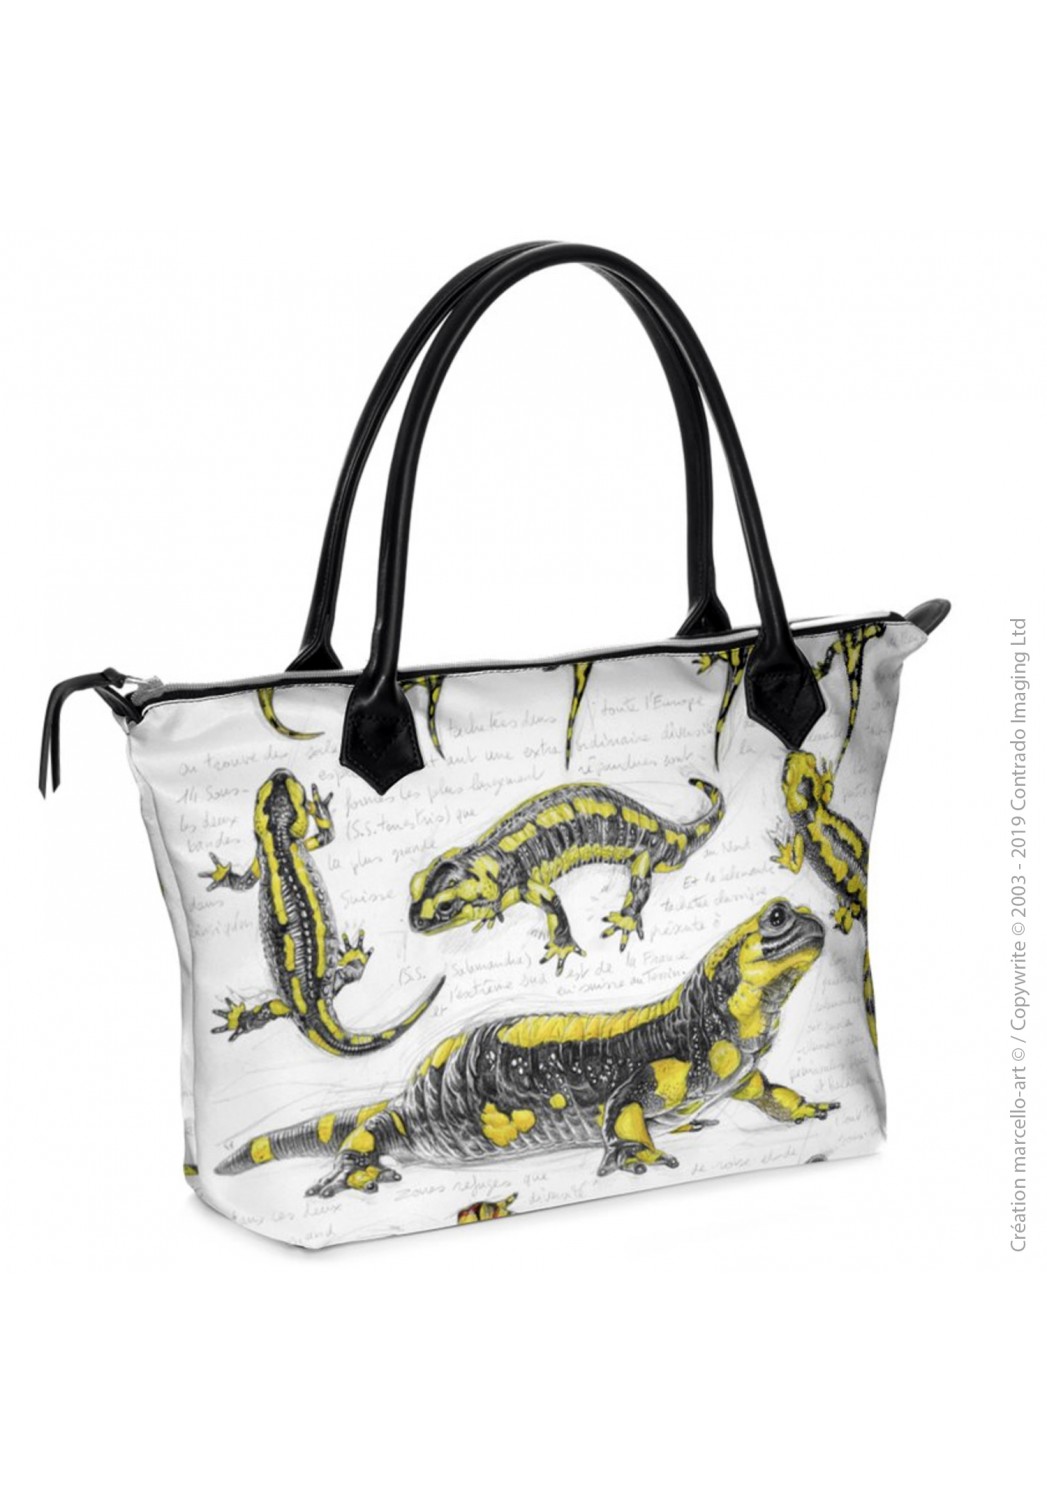 Marcello-art : Accessoires de mode Sac zippé 383 salamandre